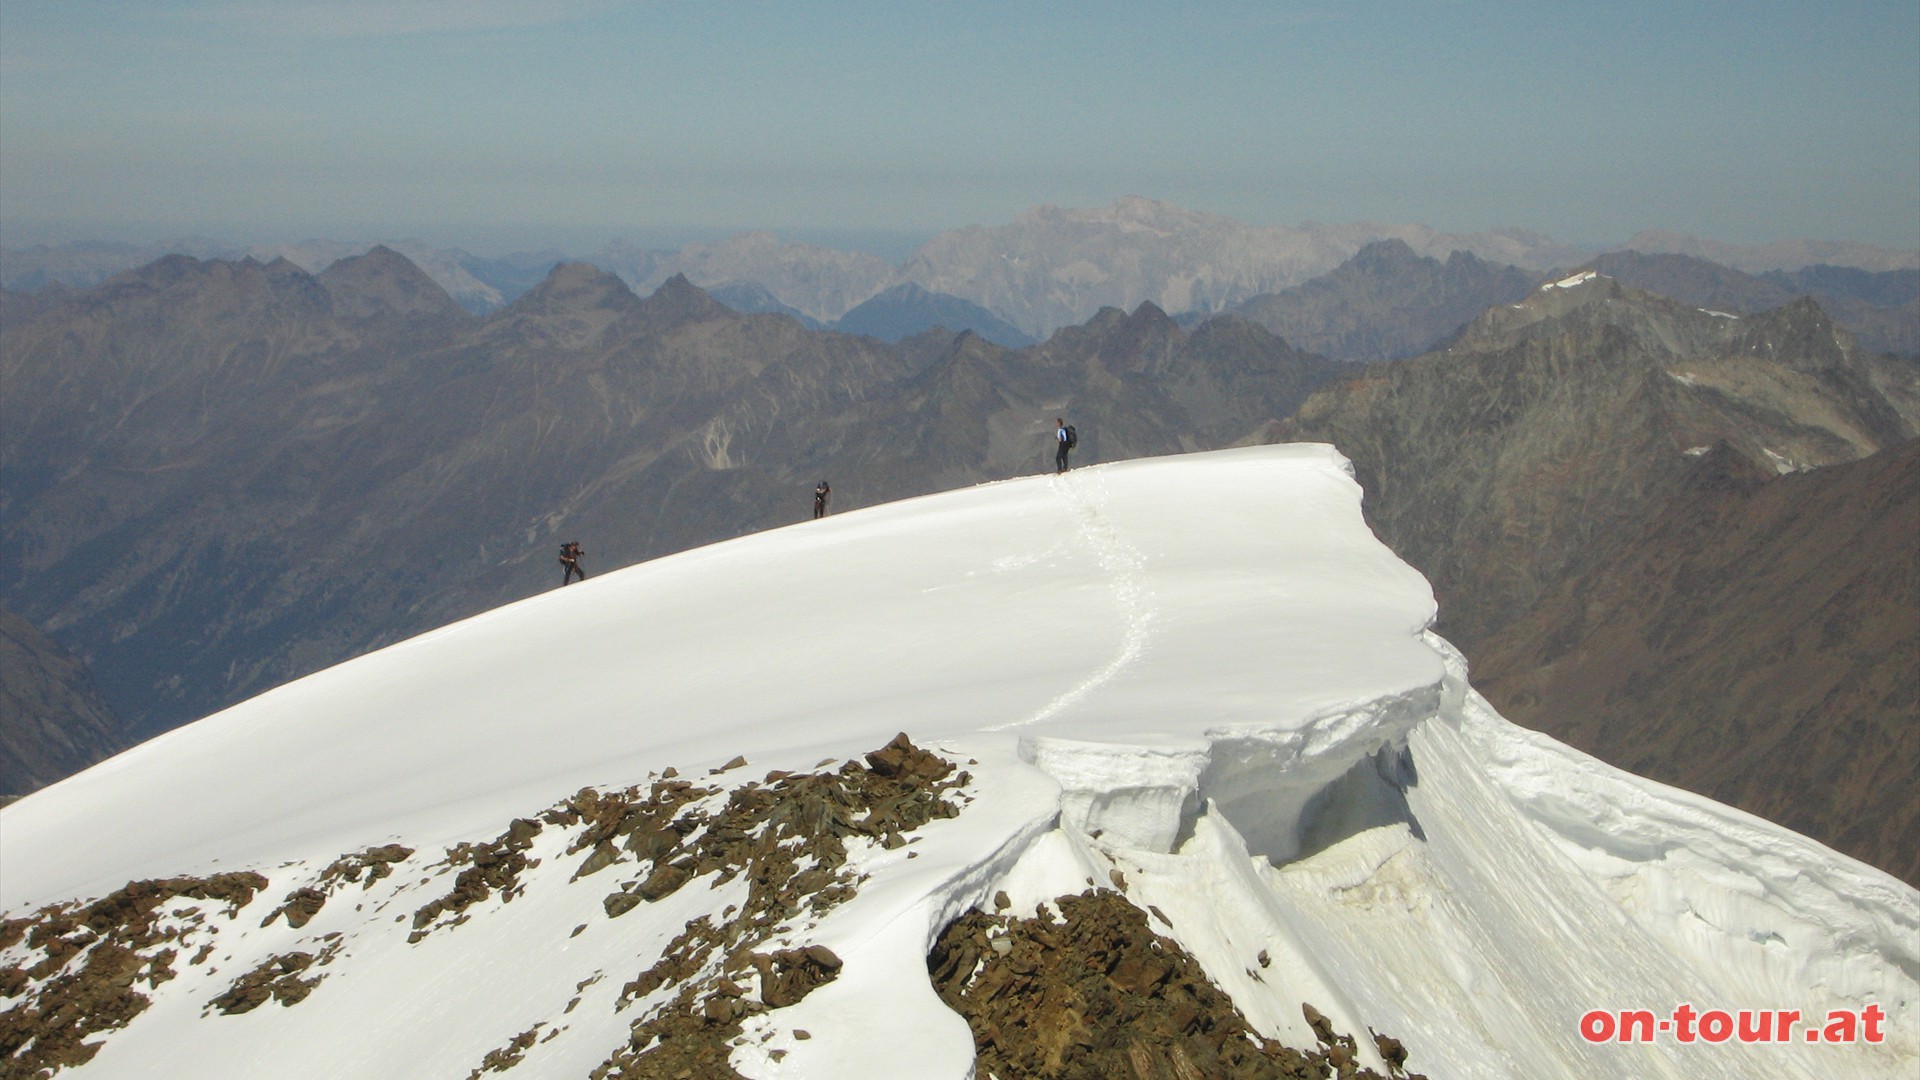 Im Norden eine Besonderheit der Wildspitze, den Nordgipfel. Ehemals hchster Gipfel mit 3774 m Hhe. Aufgrund der Gletscherschmelzprozesse sank die Hhe auf nun vermutlich etwa 3768 m, und damit unter die Sdgipfelhhe.